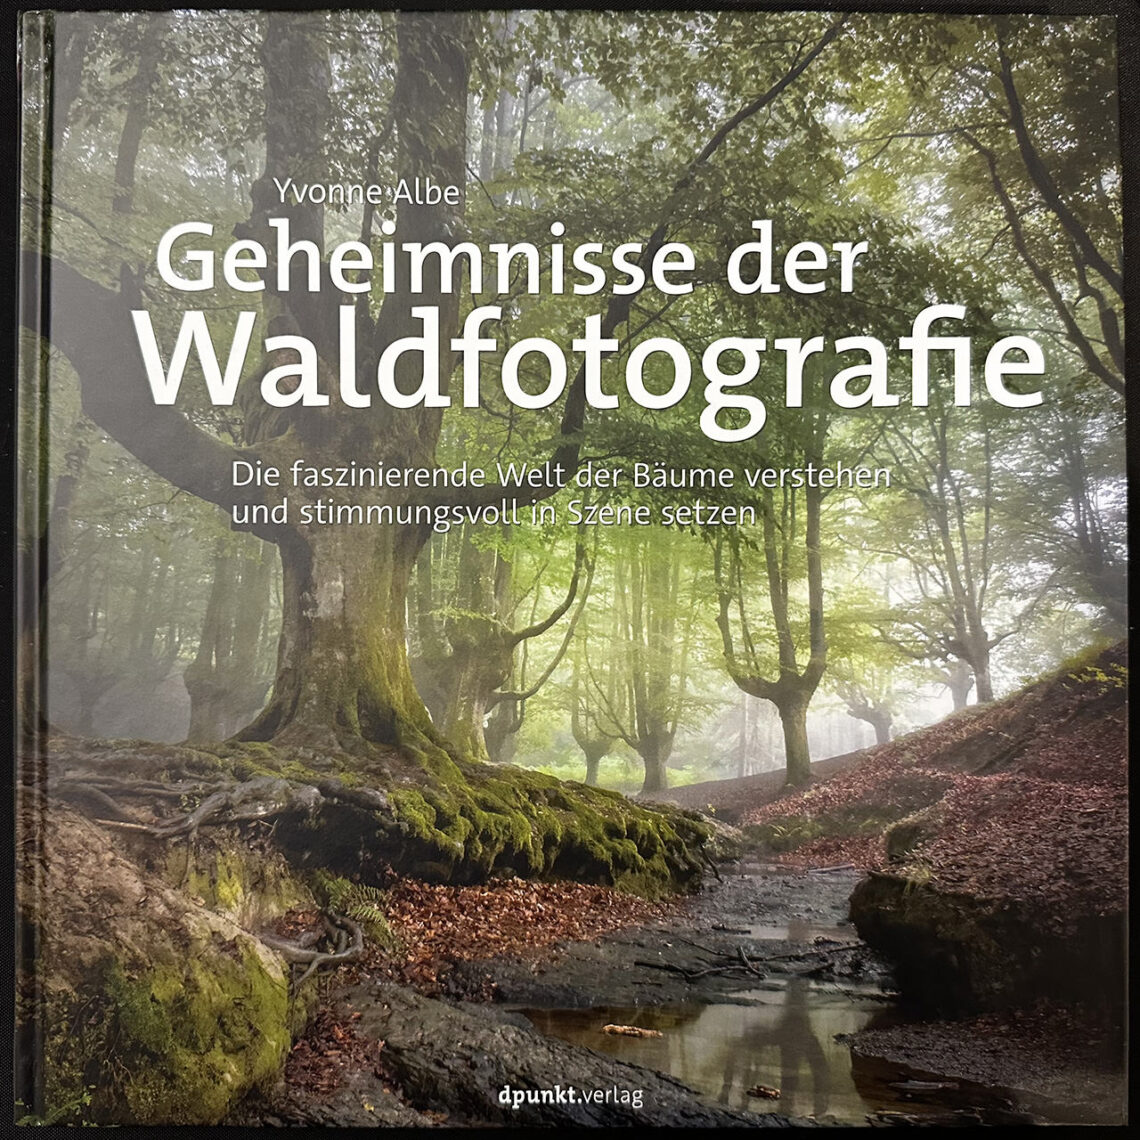 Buchbesprechung „Geheimnisse der Waldfotografie“